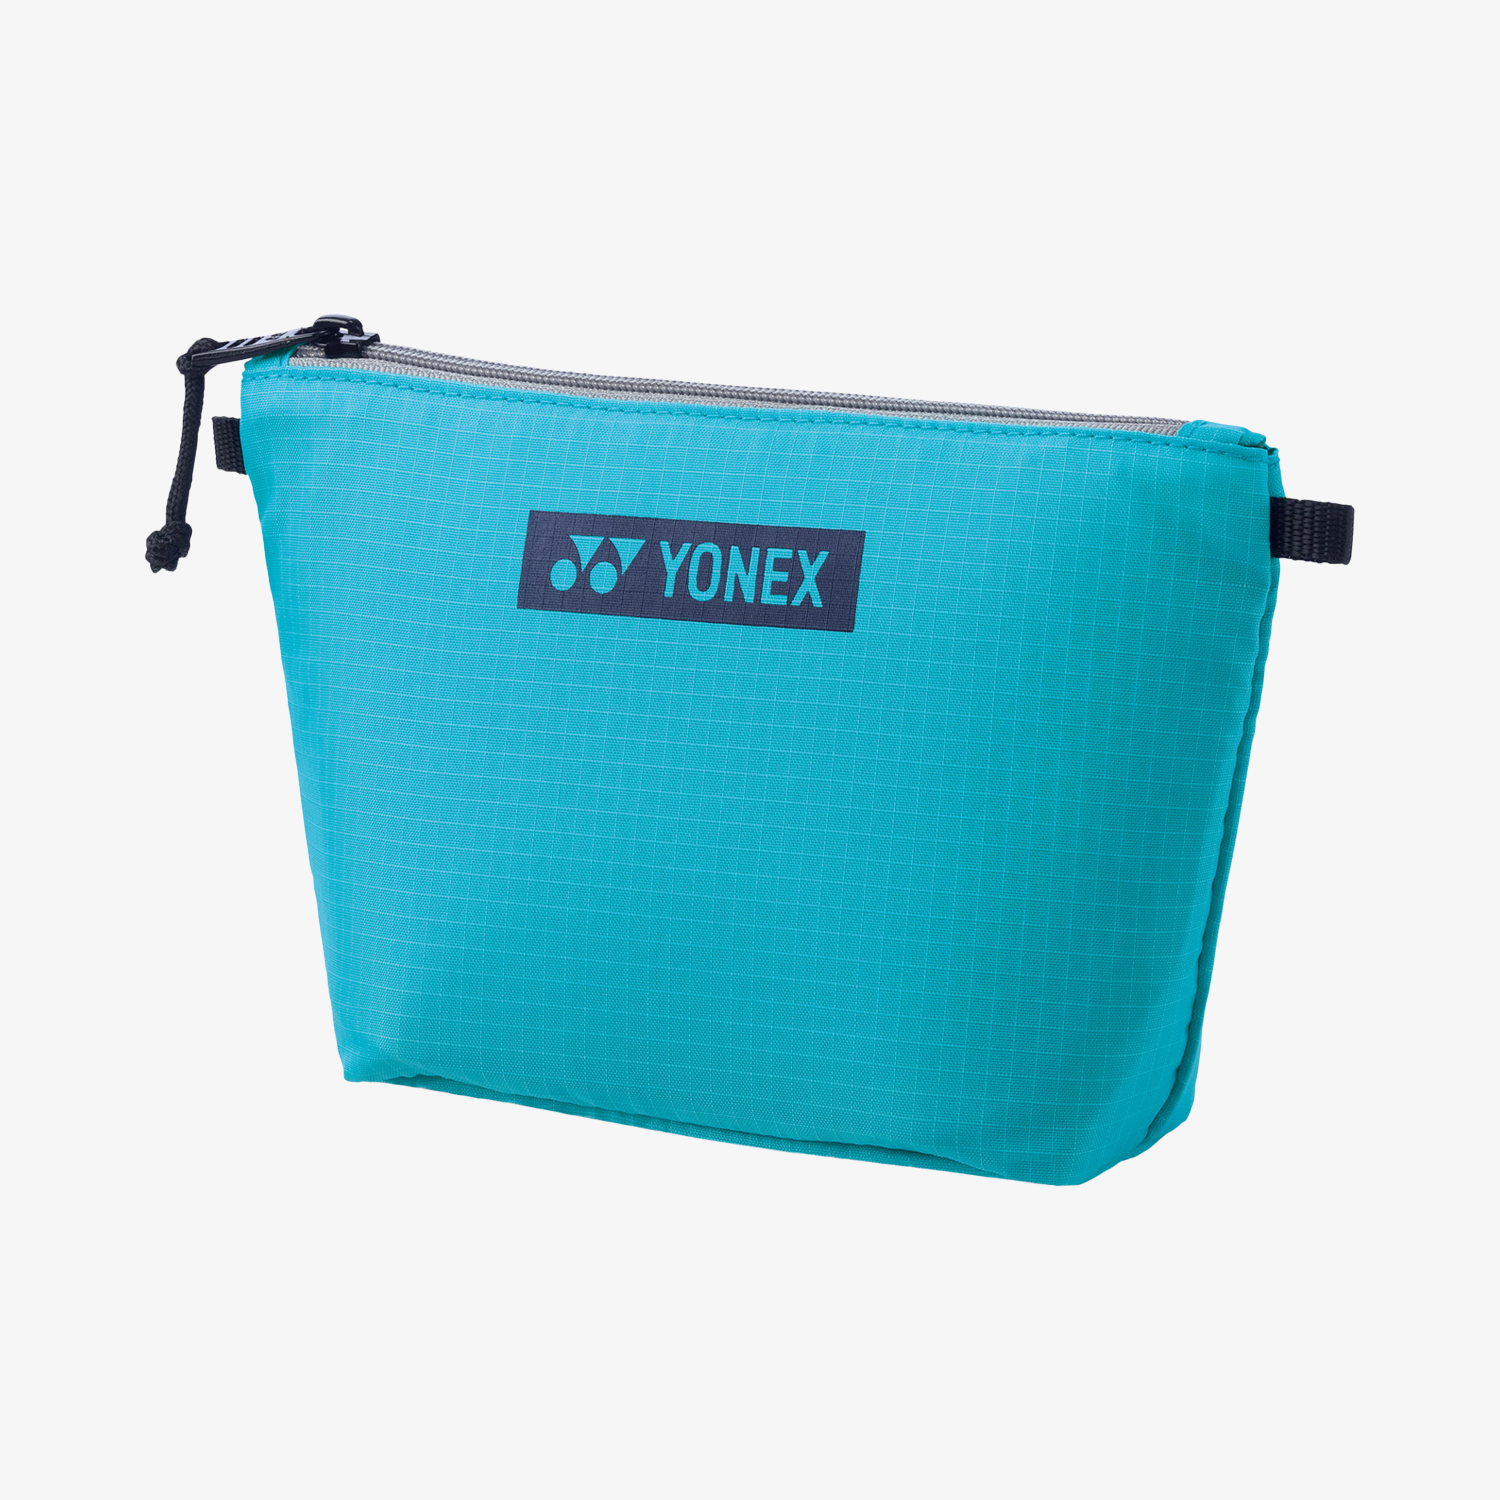 Yonex BAG2399PMTB (Mint Blue) Pouch Bag 